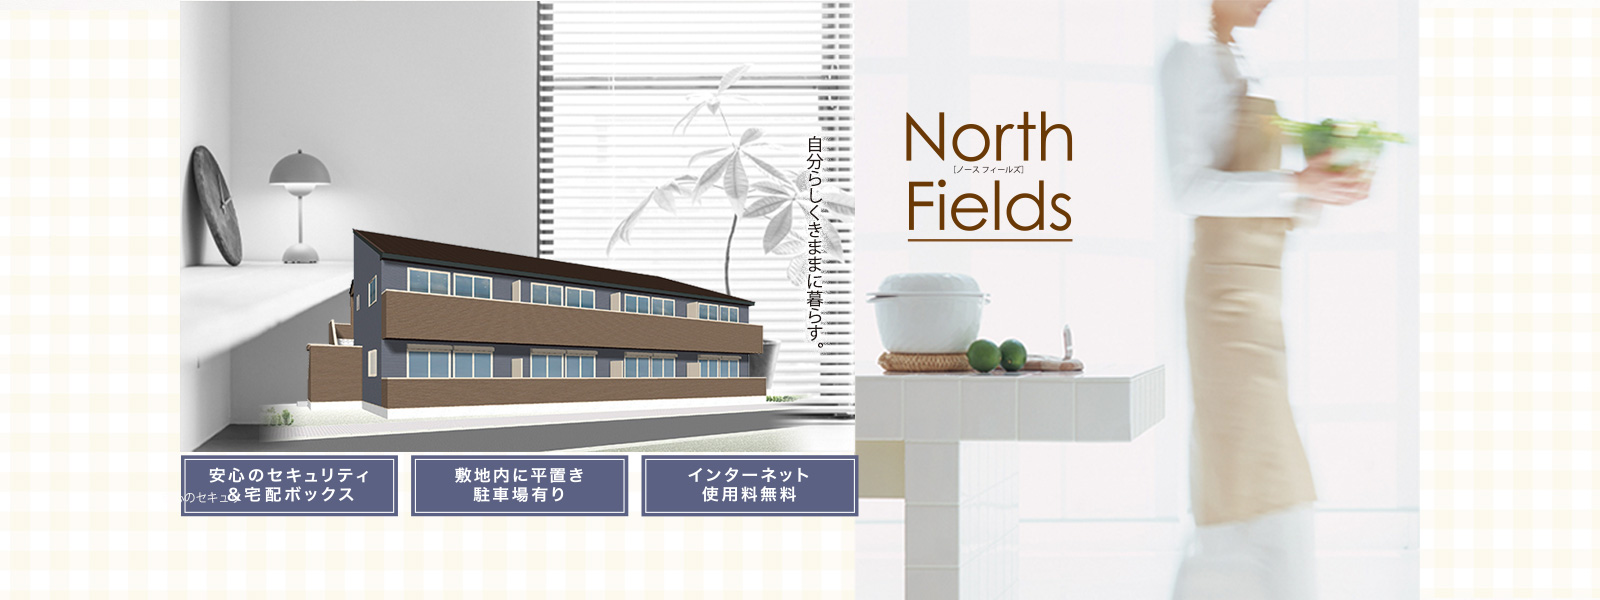 新築物件 NorthFields